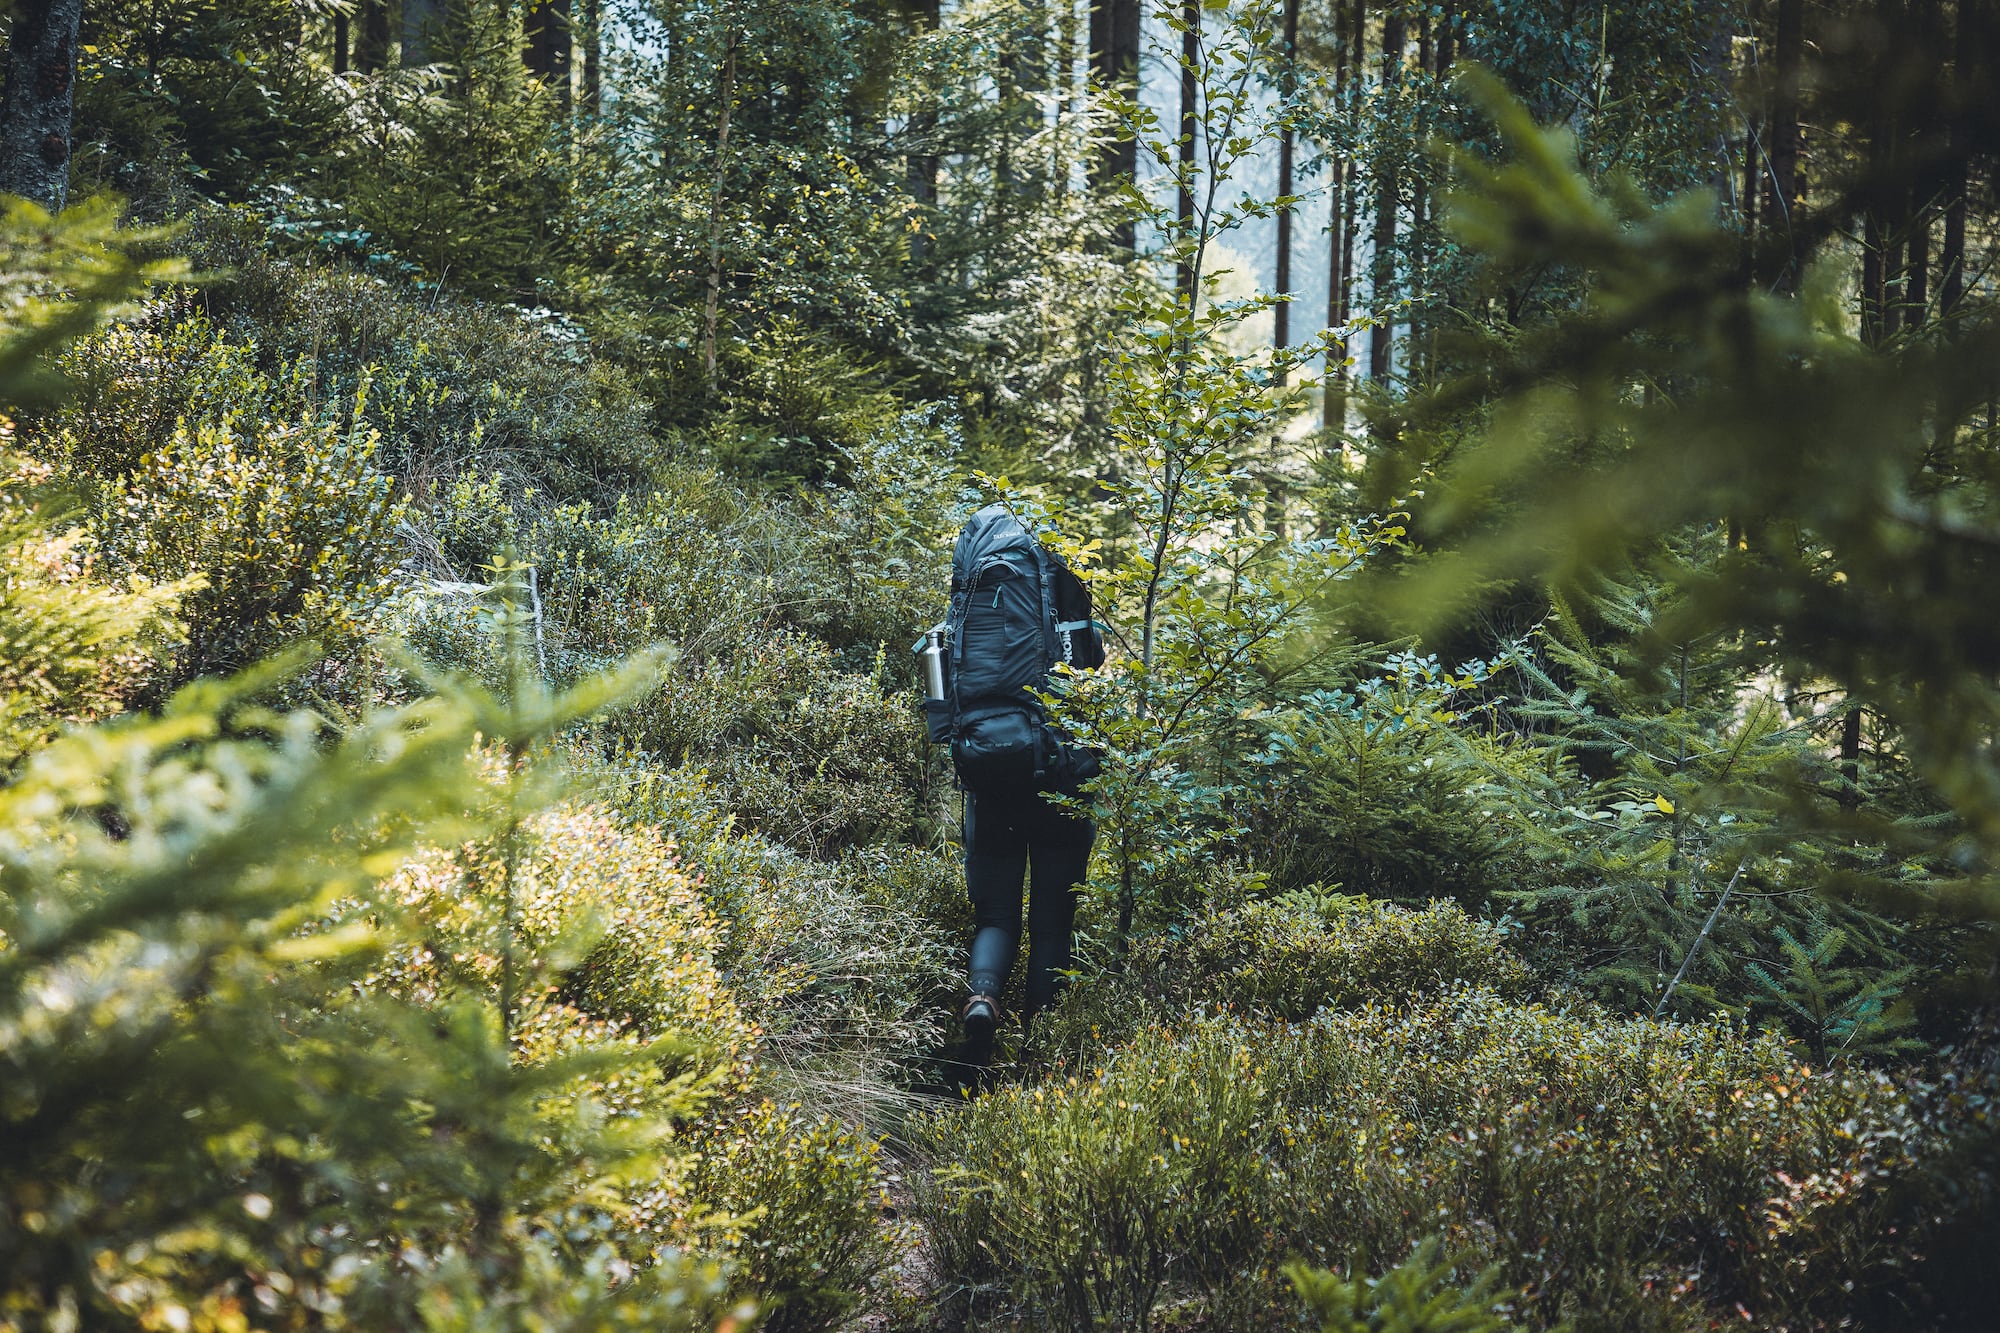 Trek: Frau bei Wandeung durch den Wald